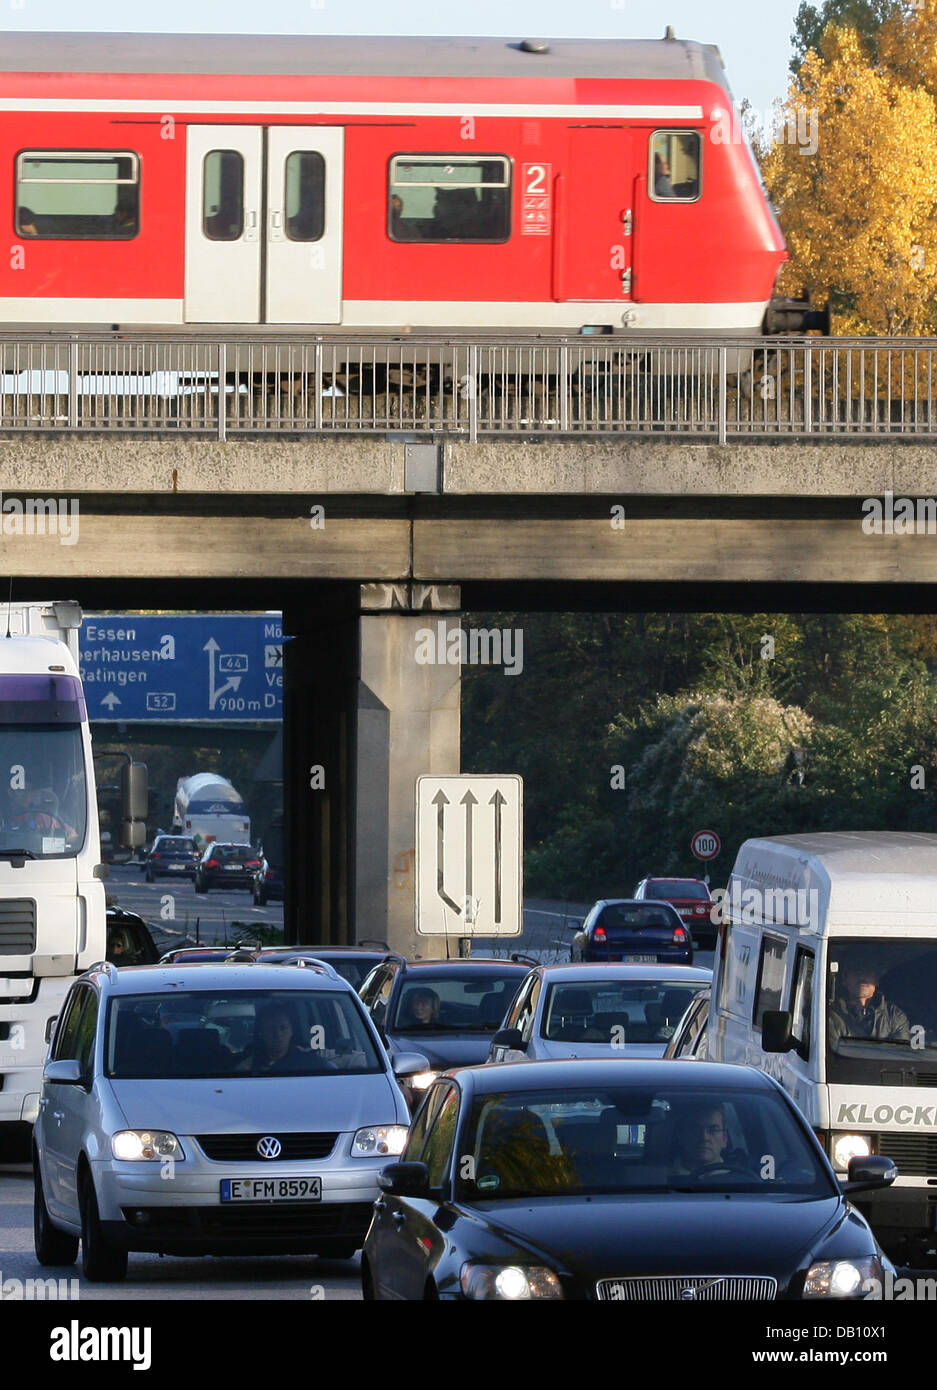 Les voitures sont pris dans un embouteillage alors qu'un train régional sur un pont, à l'autoroute A52 près de Düsseldorf, Allemagne, 18 octobre 2007. De nombreux navetteurs mis à la voiture en raison de la grève des chemins de fer allemands GDL union pilotes moteur ('Gewerkschaft der Lokomotivfuehrer'). La grève sur le trafic à courte distance. Photo : Federico Gambarini Banque D'Images